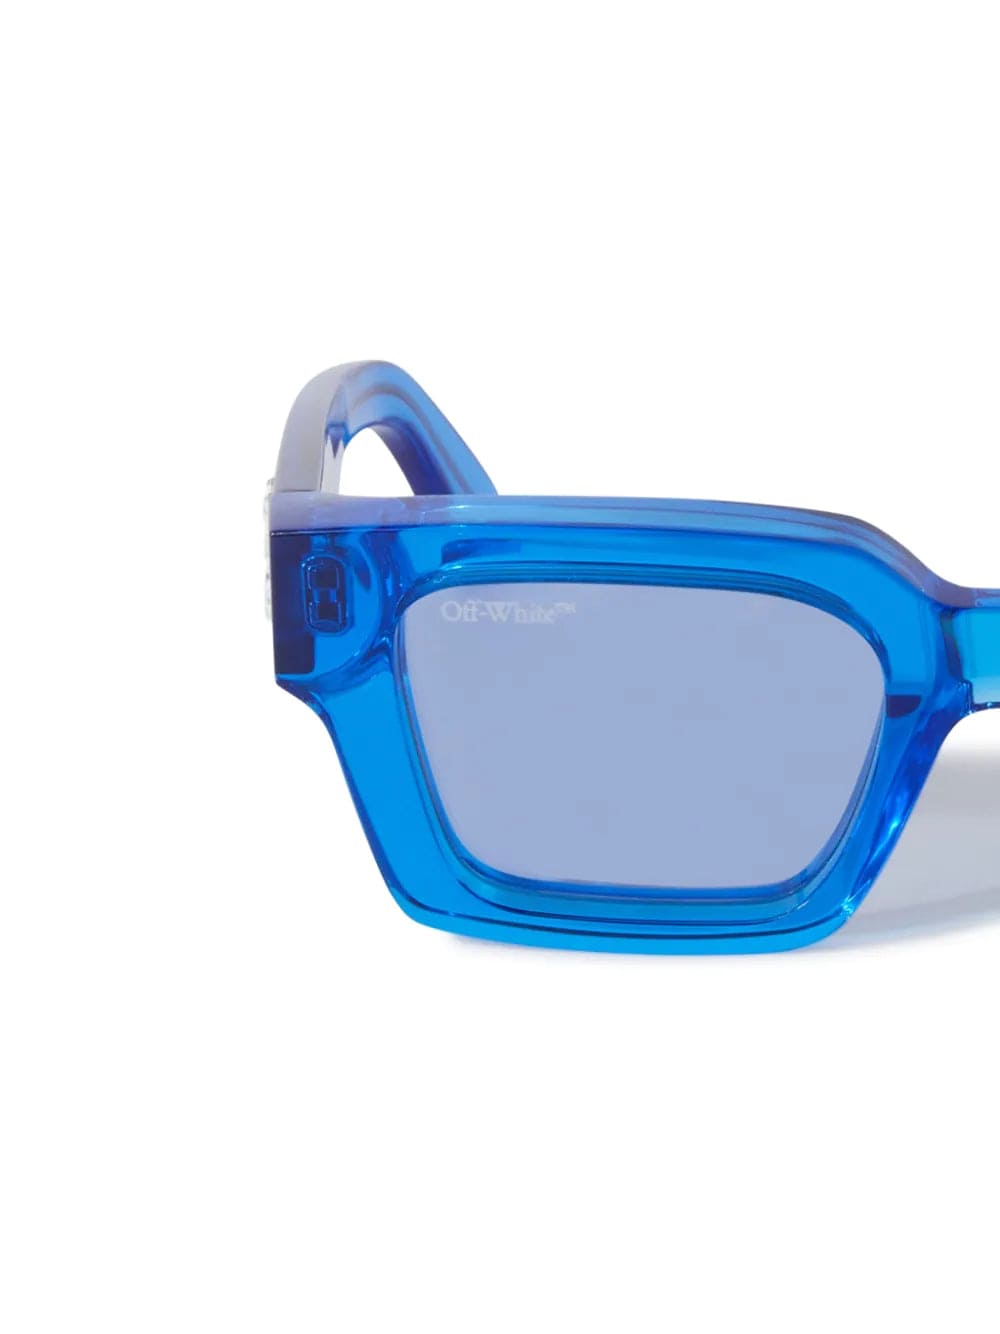 Off-White™ Occhiali da sole 50 / Azzurro trasparente / Rettangolare Off-White Virgil: occhiale rettangolare blu trasparente da sole con lenti azzurre